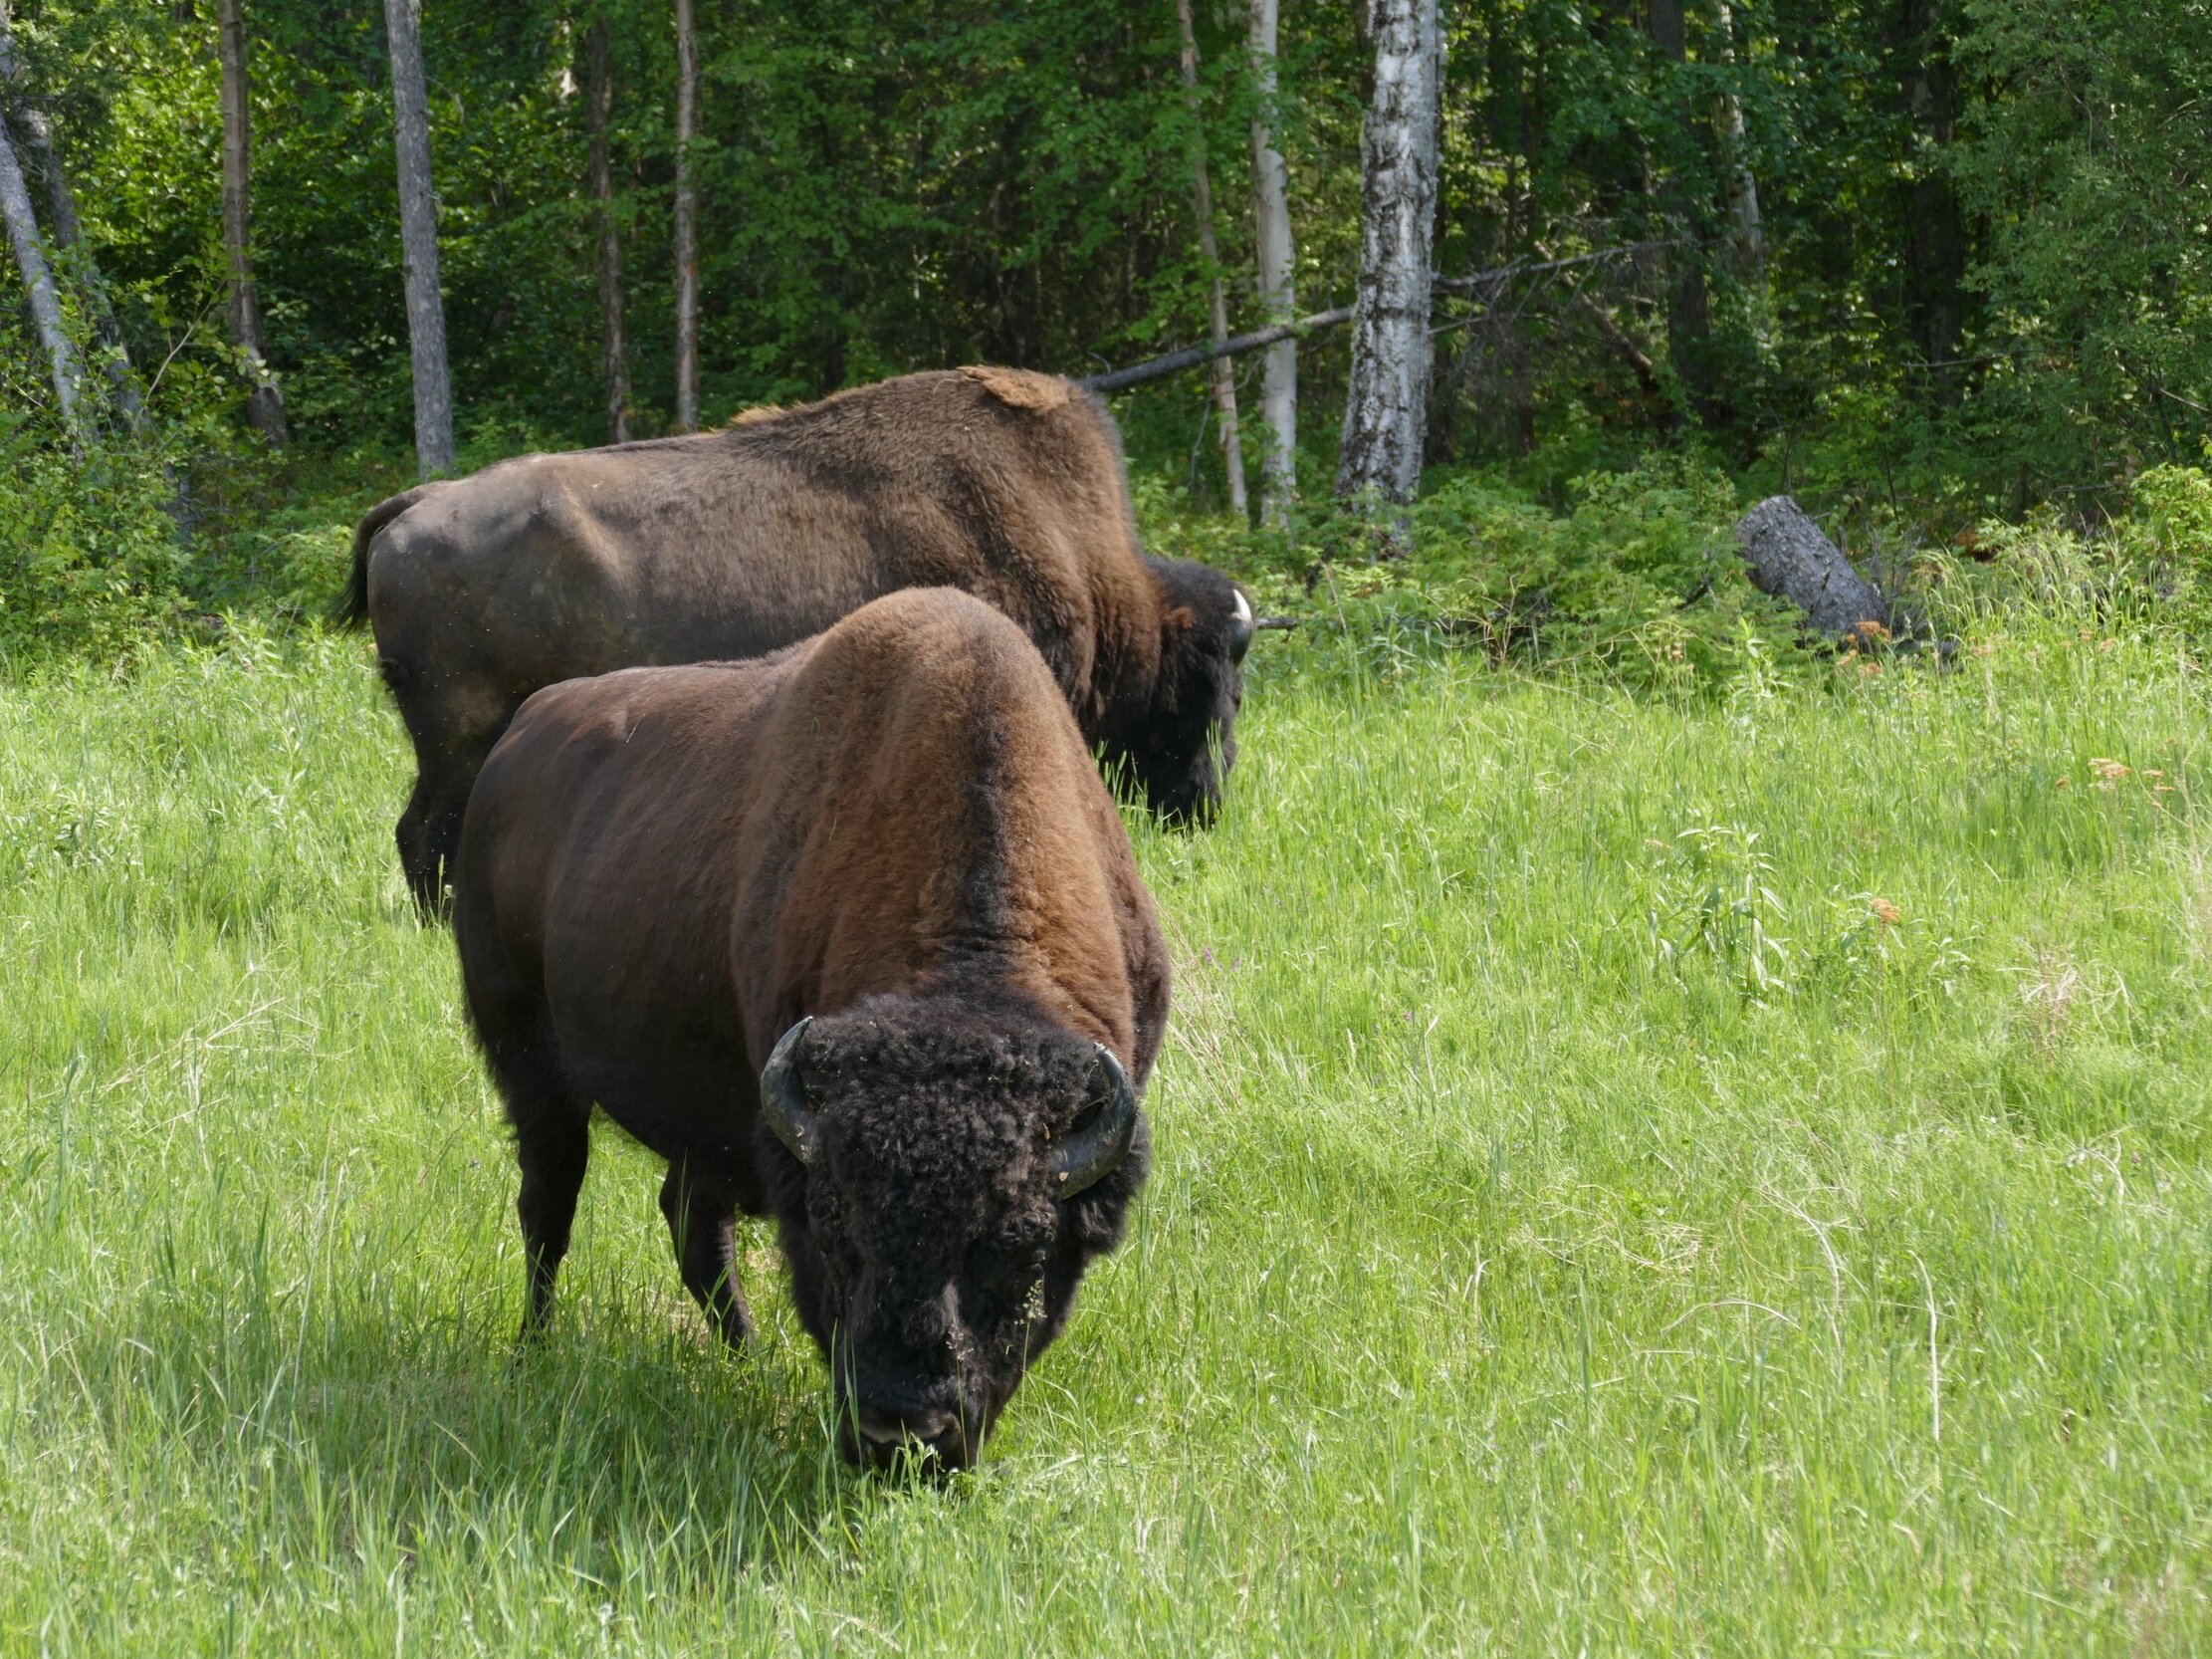 Buffalo along the Alaska Hwy